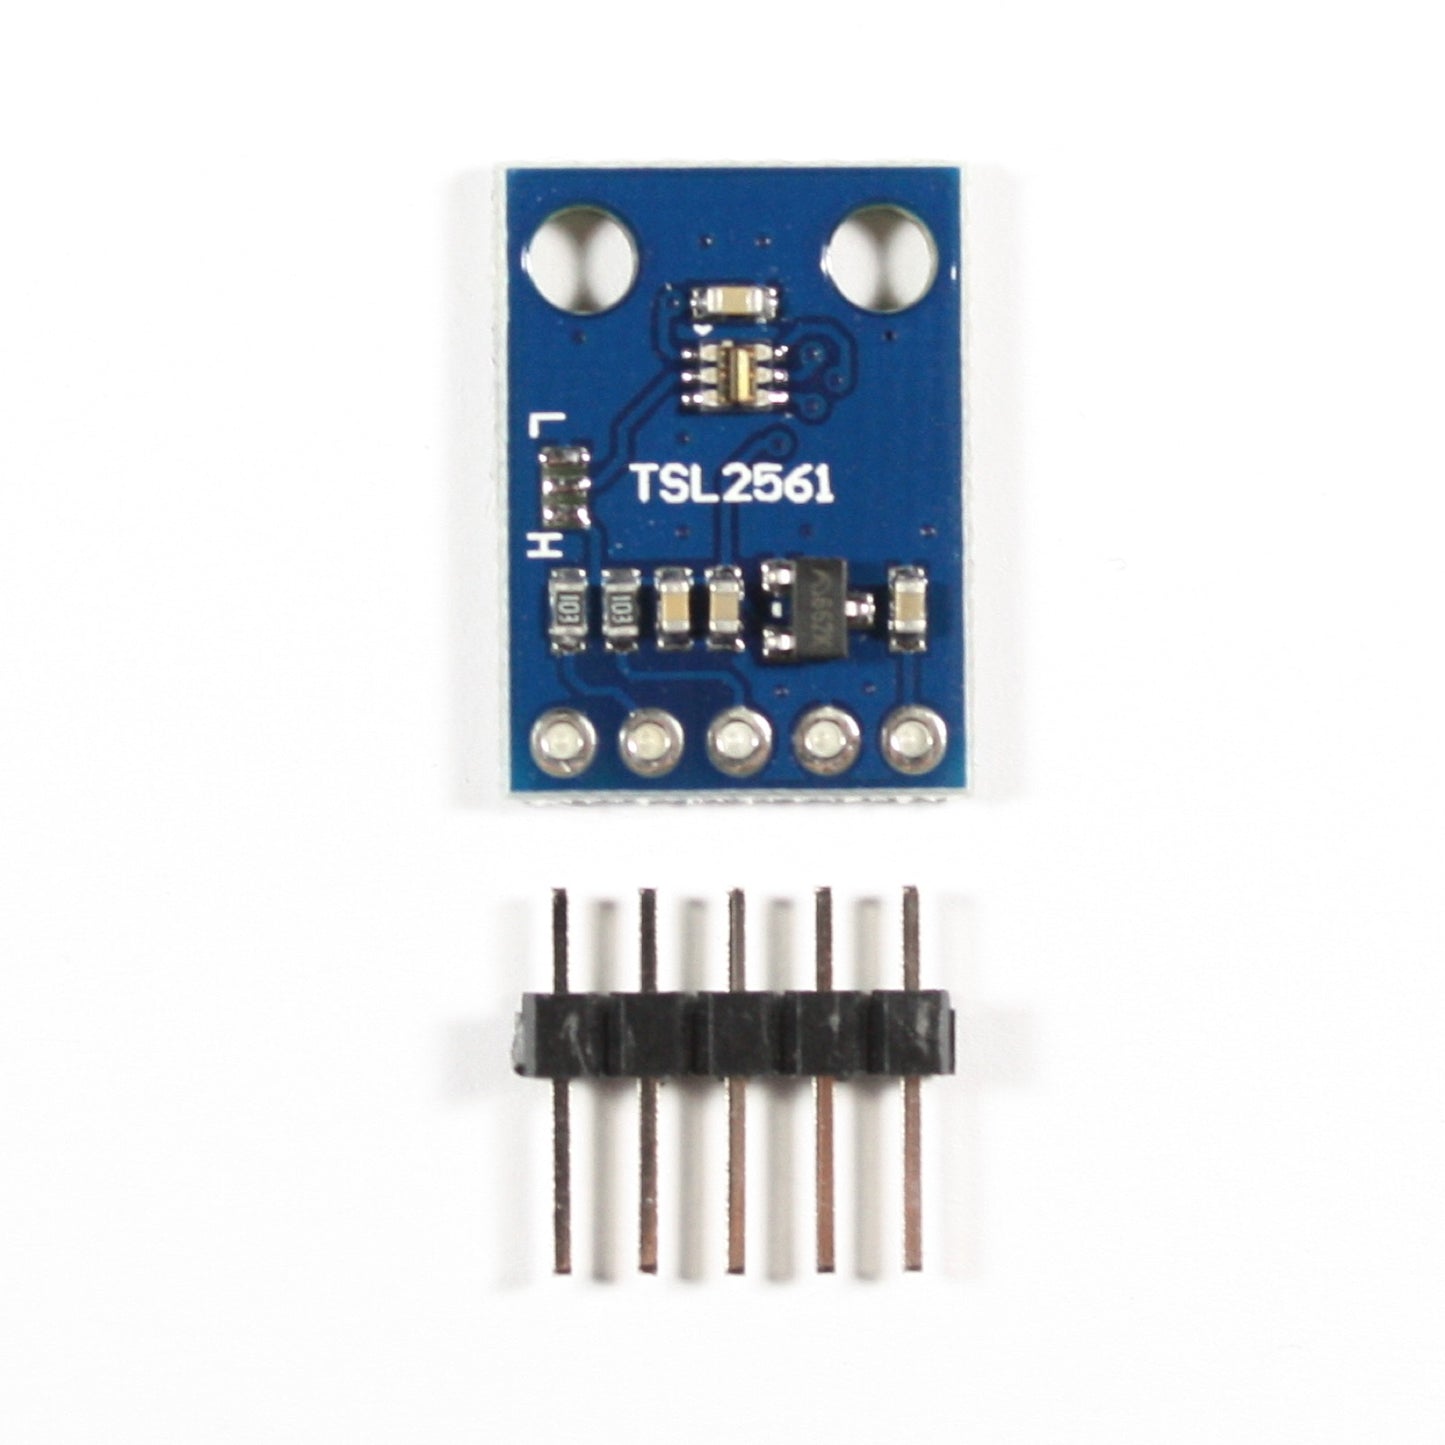 TSL2561 Lichtsensor-Modul, I2C